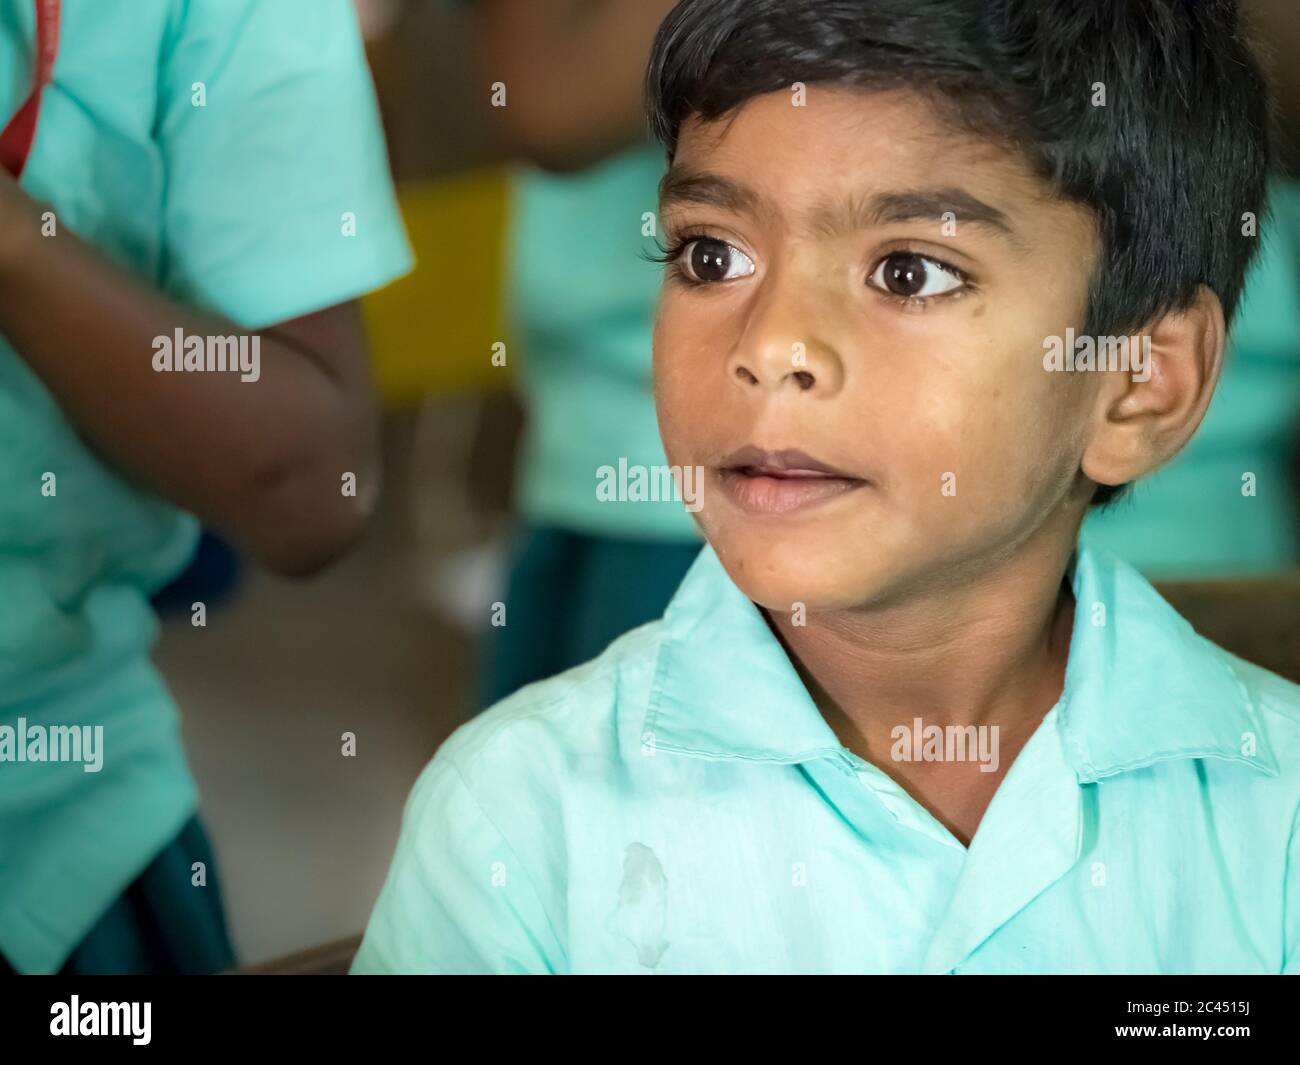 PUDUCHERRY, INDIEN - DEZEMBER CIRCA, 2018. Unidentifizierte arme indische Junge Porträt suchen ernst mit grünen Regierung Uniform im Klassenzimmer Stockfoto